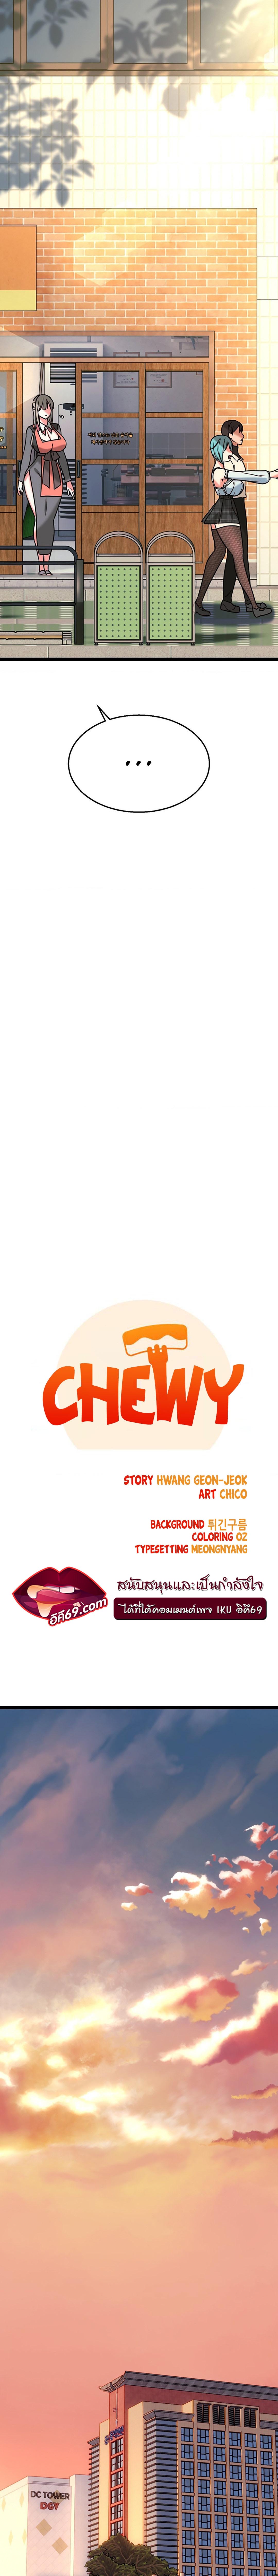 Chewy ตอนที่ 9 (2)